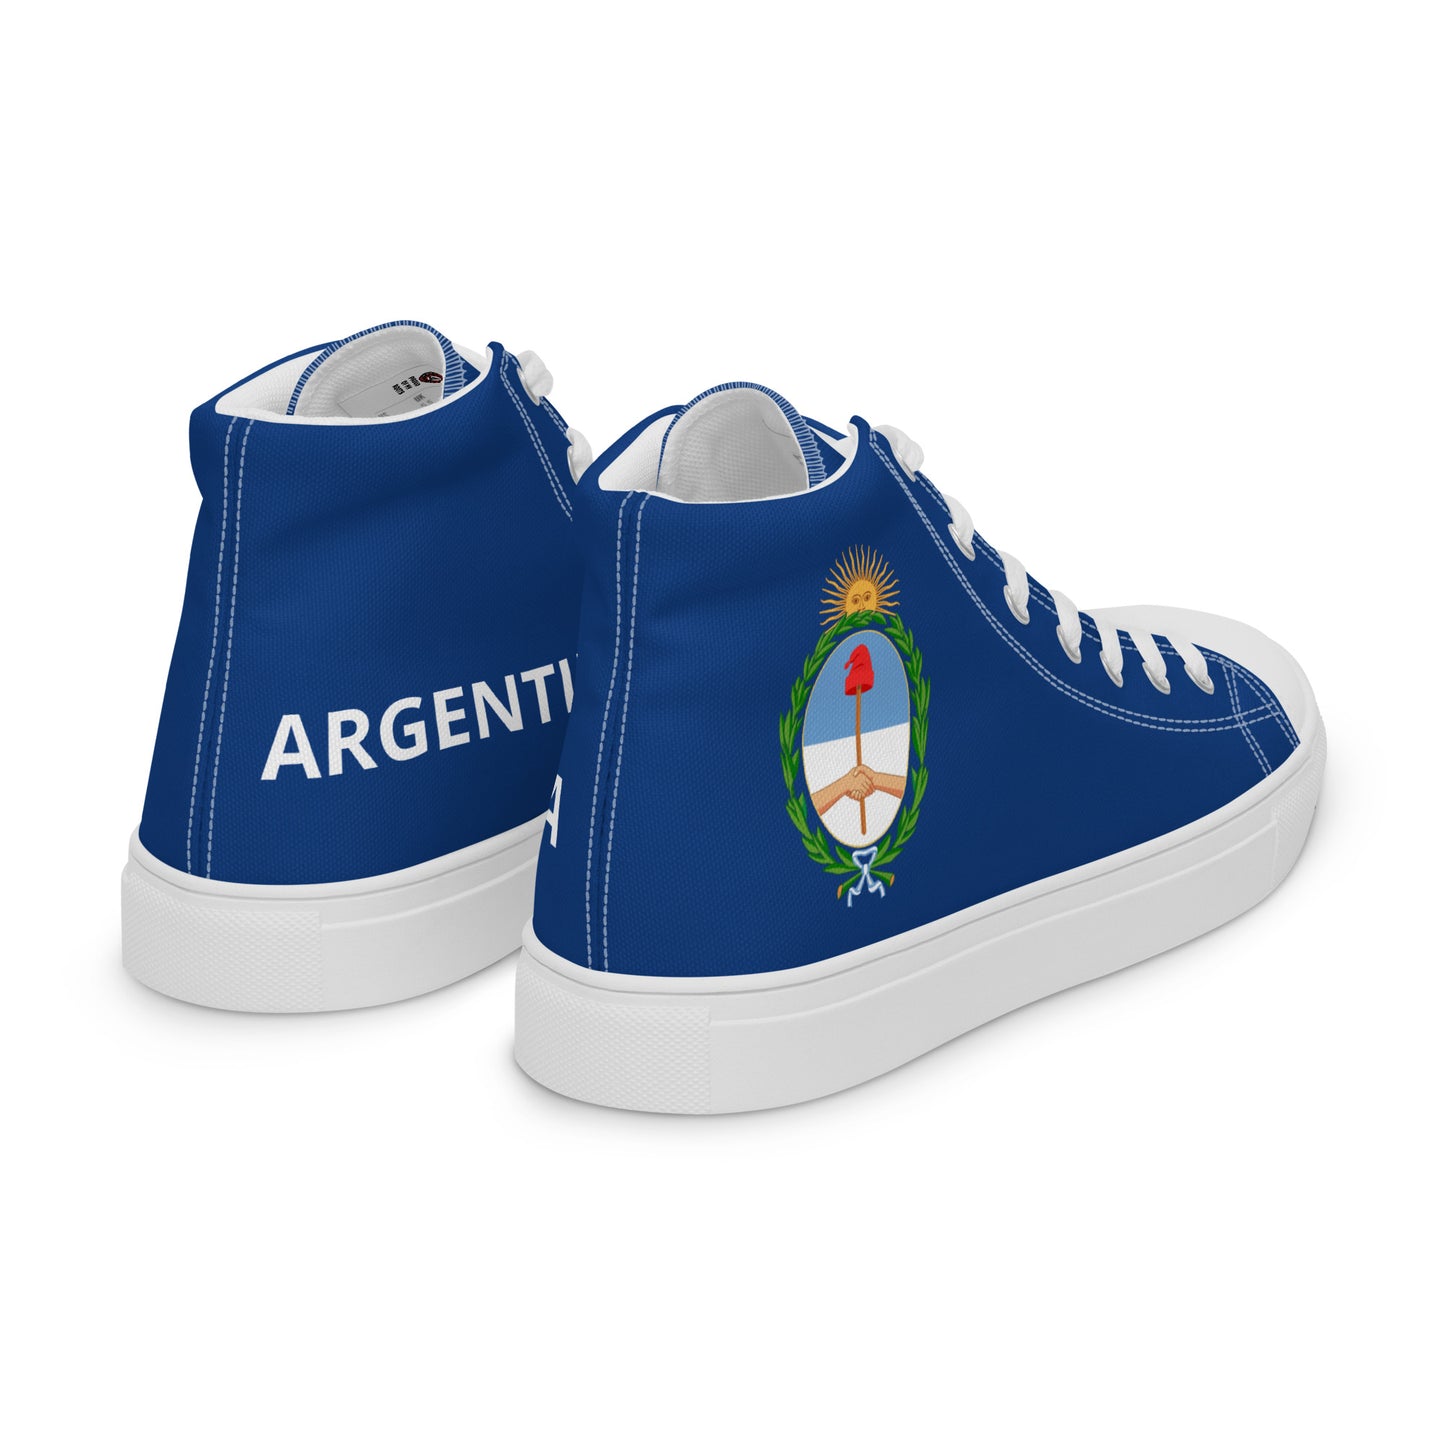 Argentina - Mujer - Azul - Zapatos High top